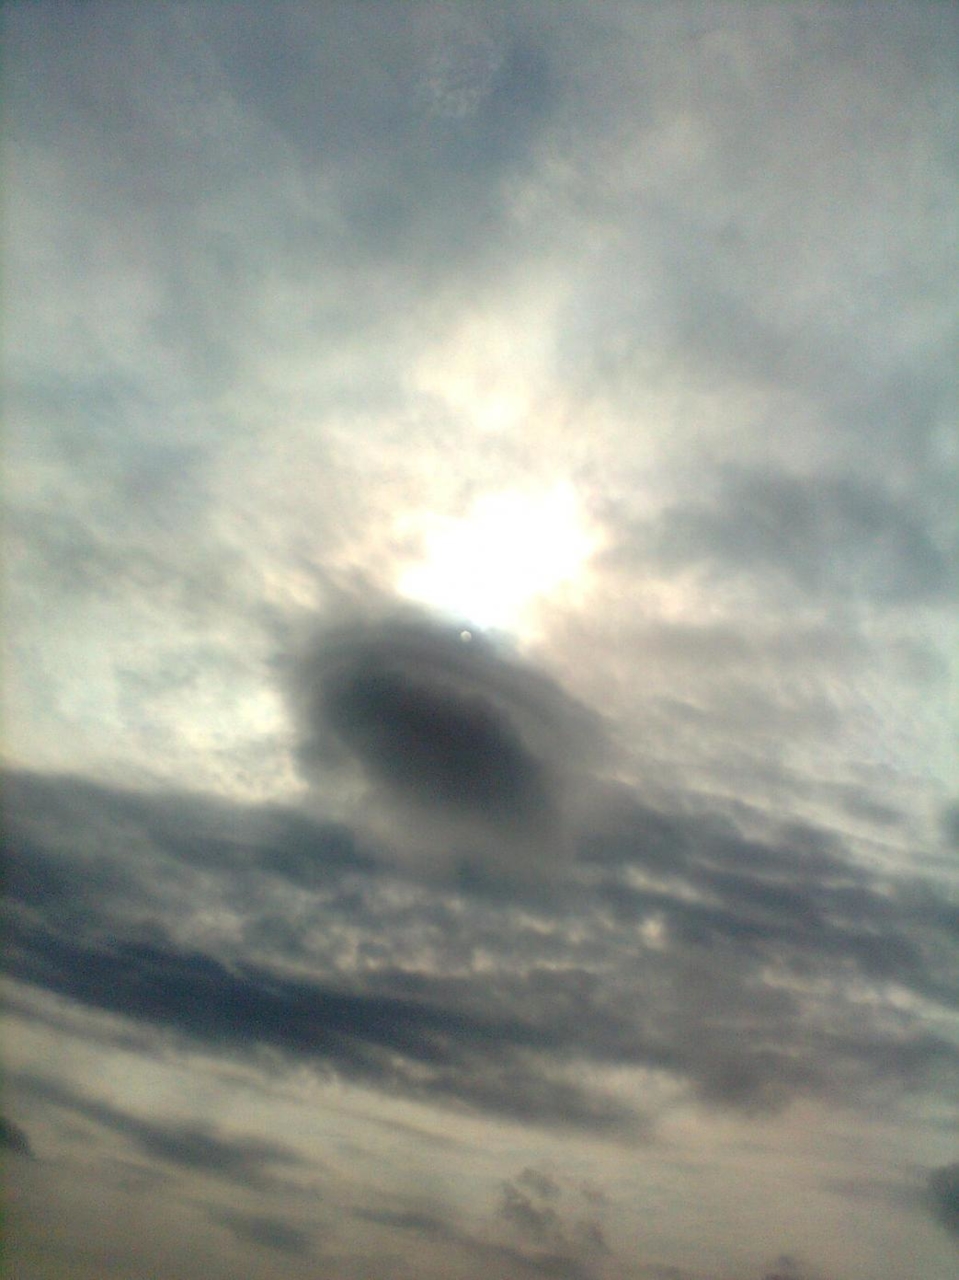 8 มีนาคม 2012 - ประมาณเวลา 9 นาฬิกา
ถ่ายจากมอเตอร์เวย์กำลังจะไปชลบุรี 
เมฆลอยต่ำ ต่ำกว่าระดับเมฆปกติและมีการหมุนรอบตัวเอง ตรงรอบนอก รอบในอยู่นิ่งๆ แ